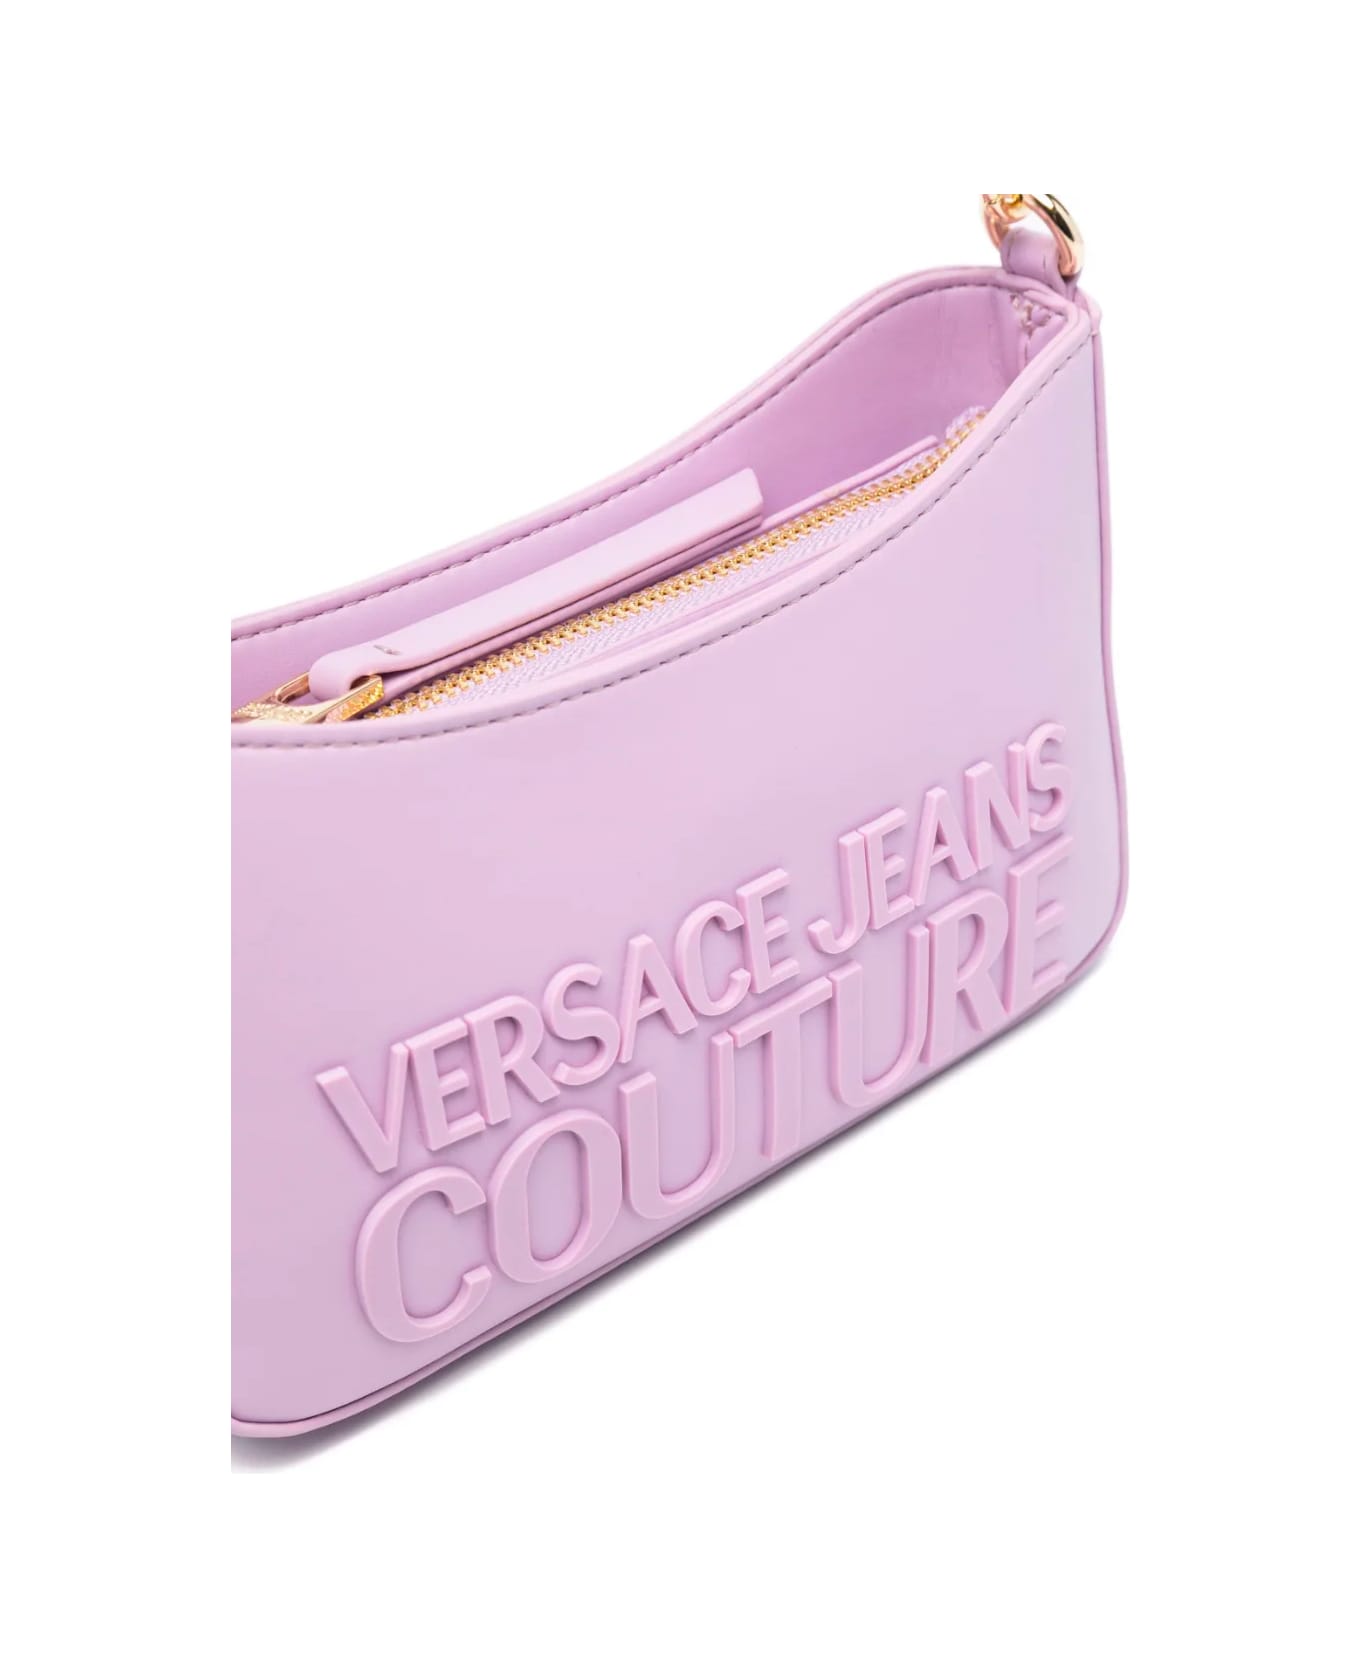 Versace Jeans Couture Bag - Lavander